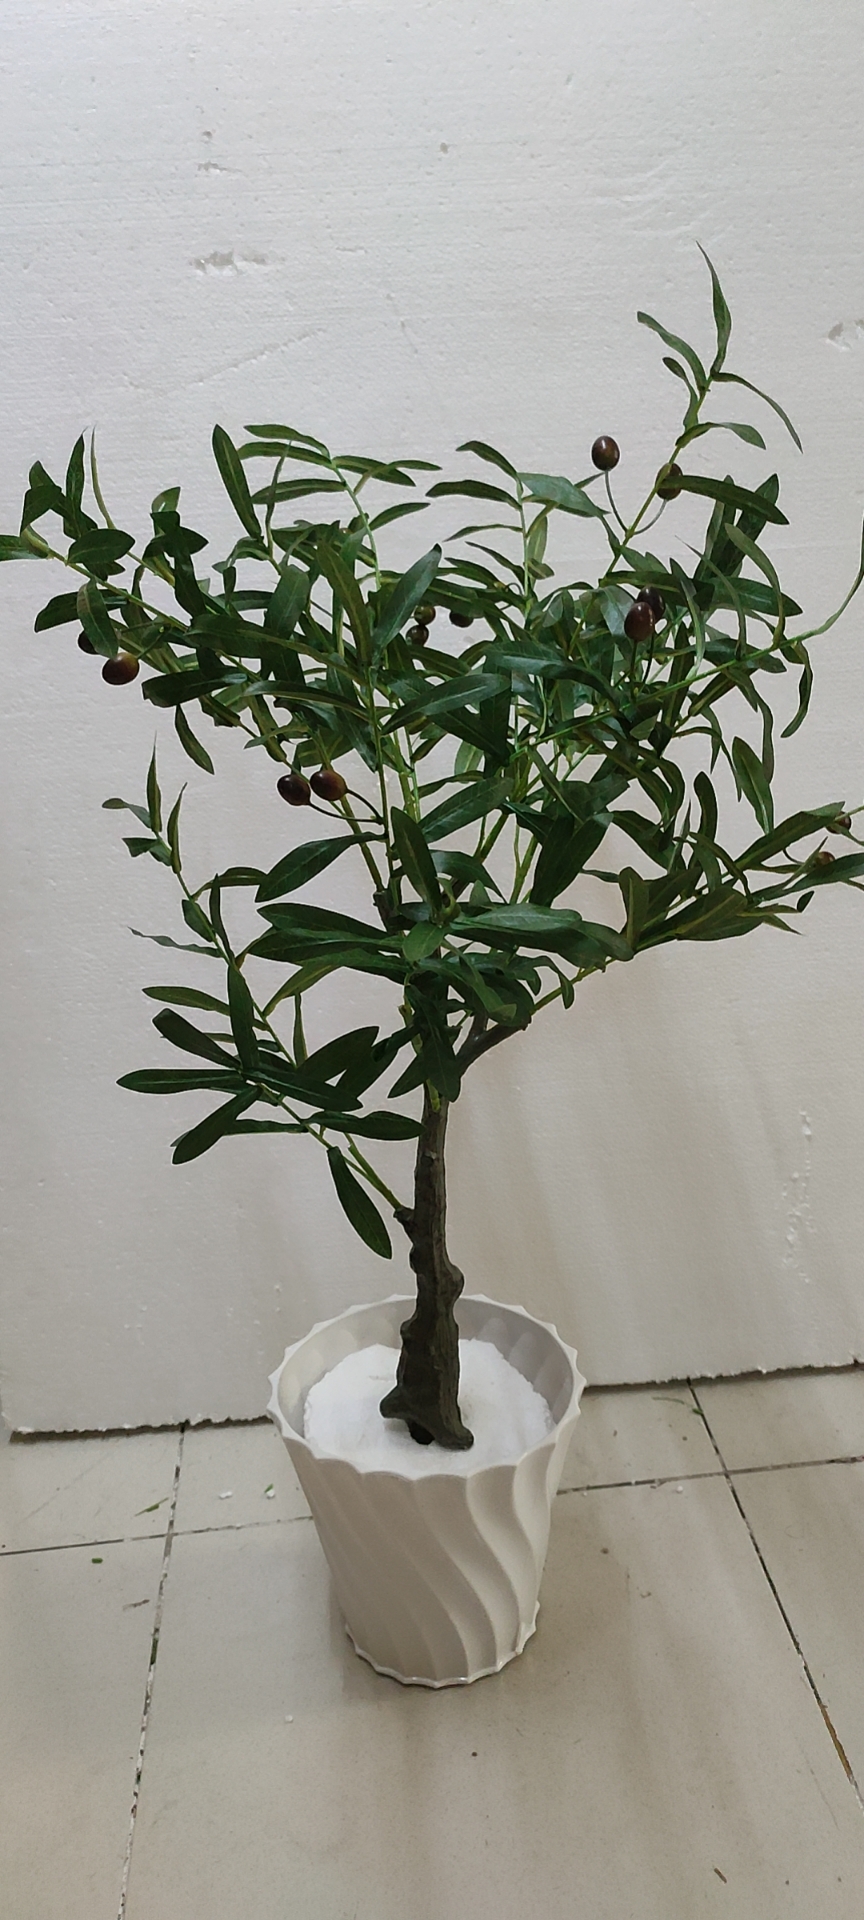 Cây Oliu giả, cây Olive decor trang trí nhà cửa, cao 80cm, 120cm (chưa bao gồm chậu)